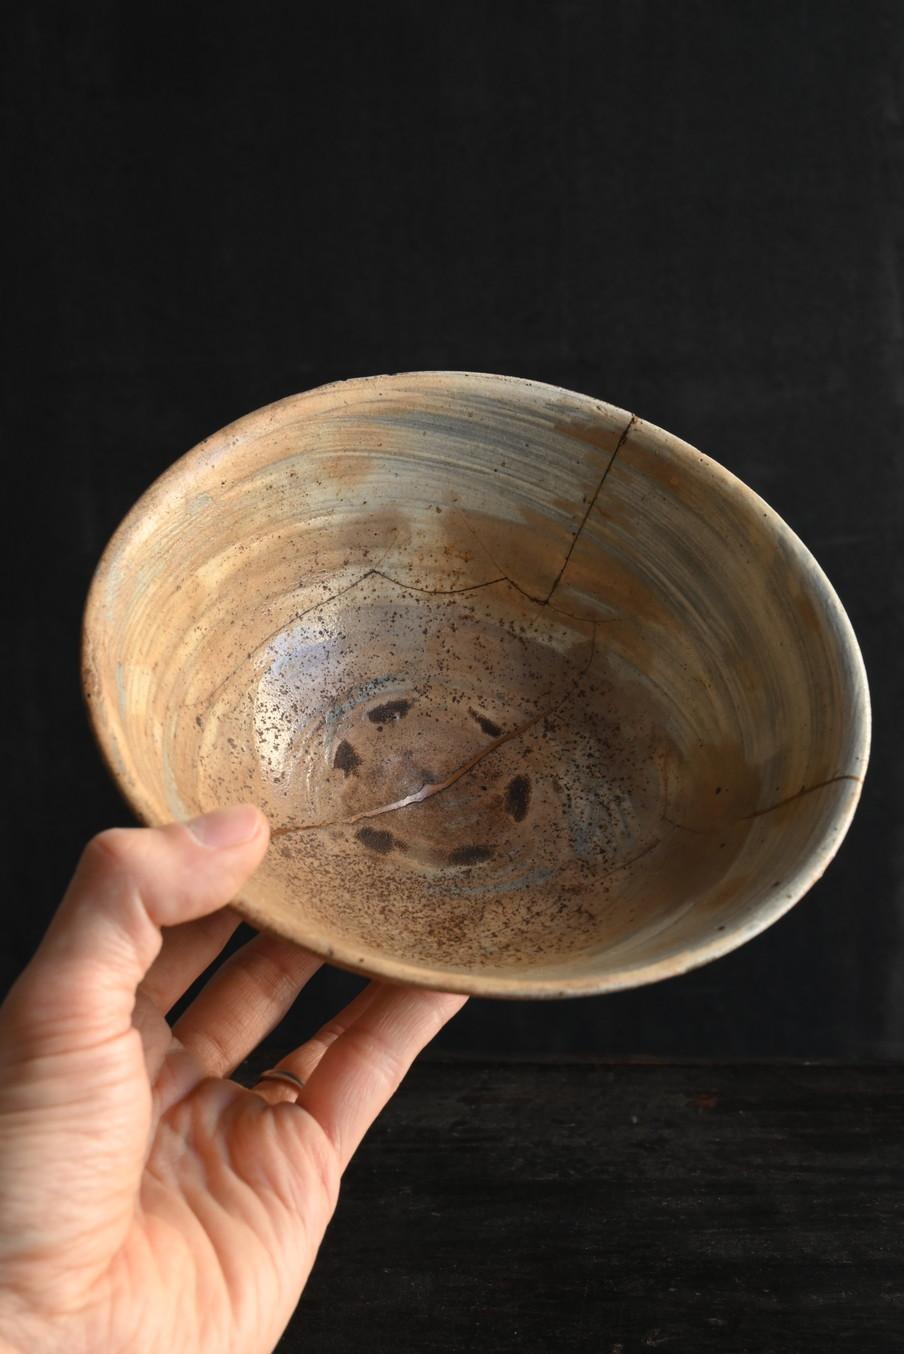 Il s'agit d'une poterie fabriquée au début de la dynastie Joseon en Corée.
Ce bol à thé a été fabriqué vers le 15e ou le 16e siècle.
L'une des caractéristiques de cette époque est que la poterie d'un blanc pur ne pouvait être utilisée que par la